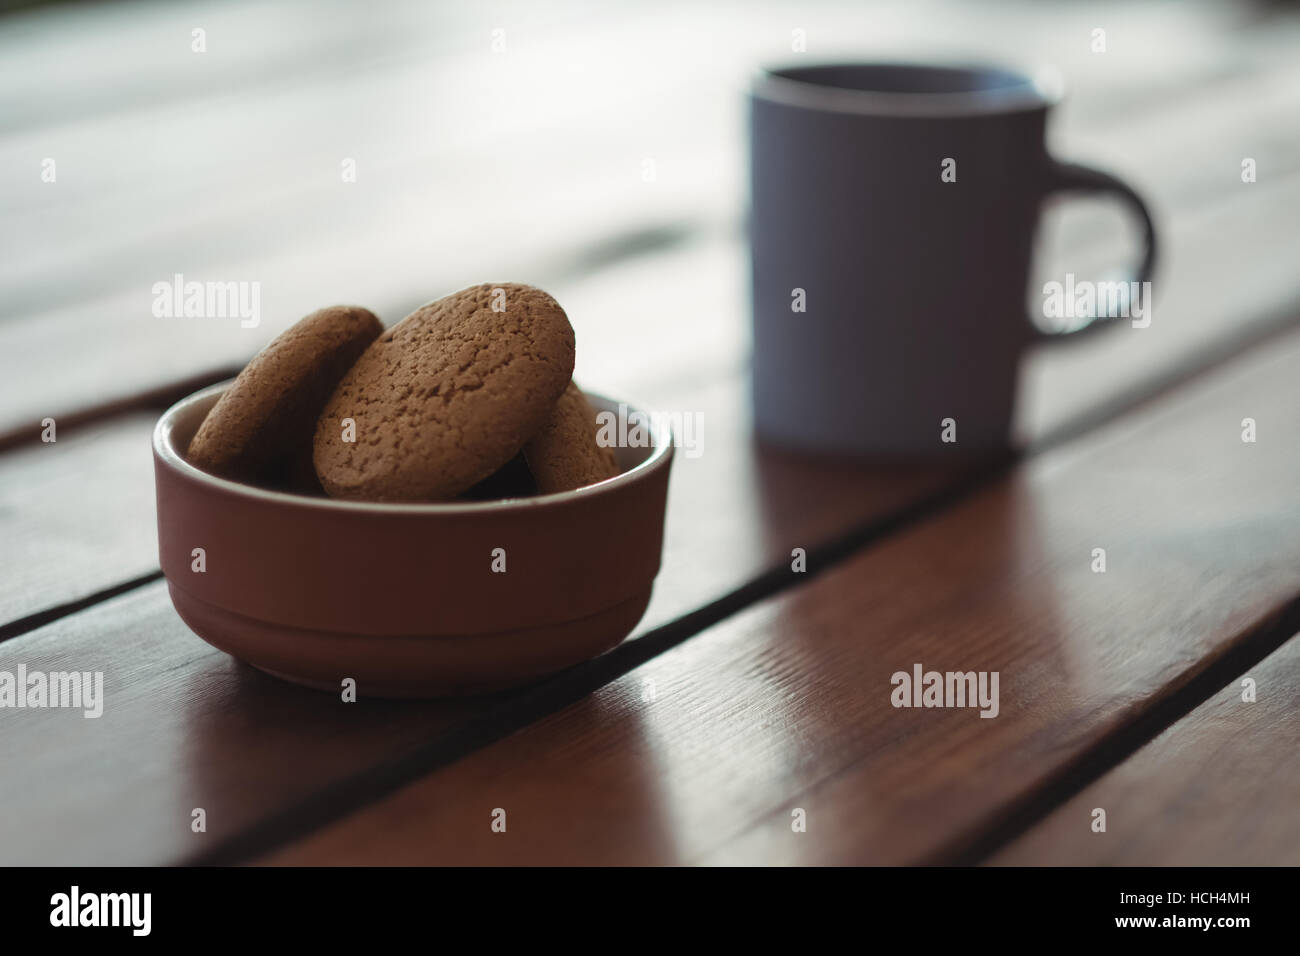 Biscotti nella ciotola con tazza di caffè Foto Stock